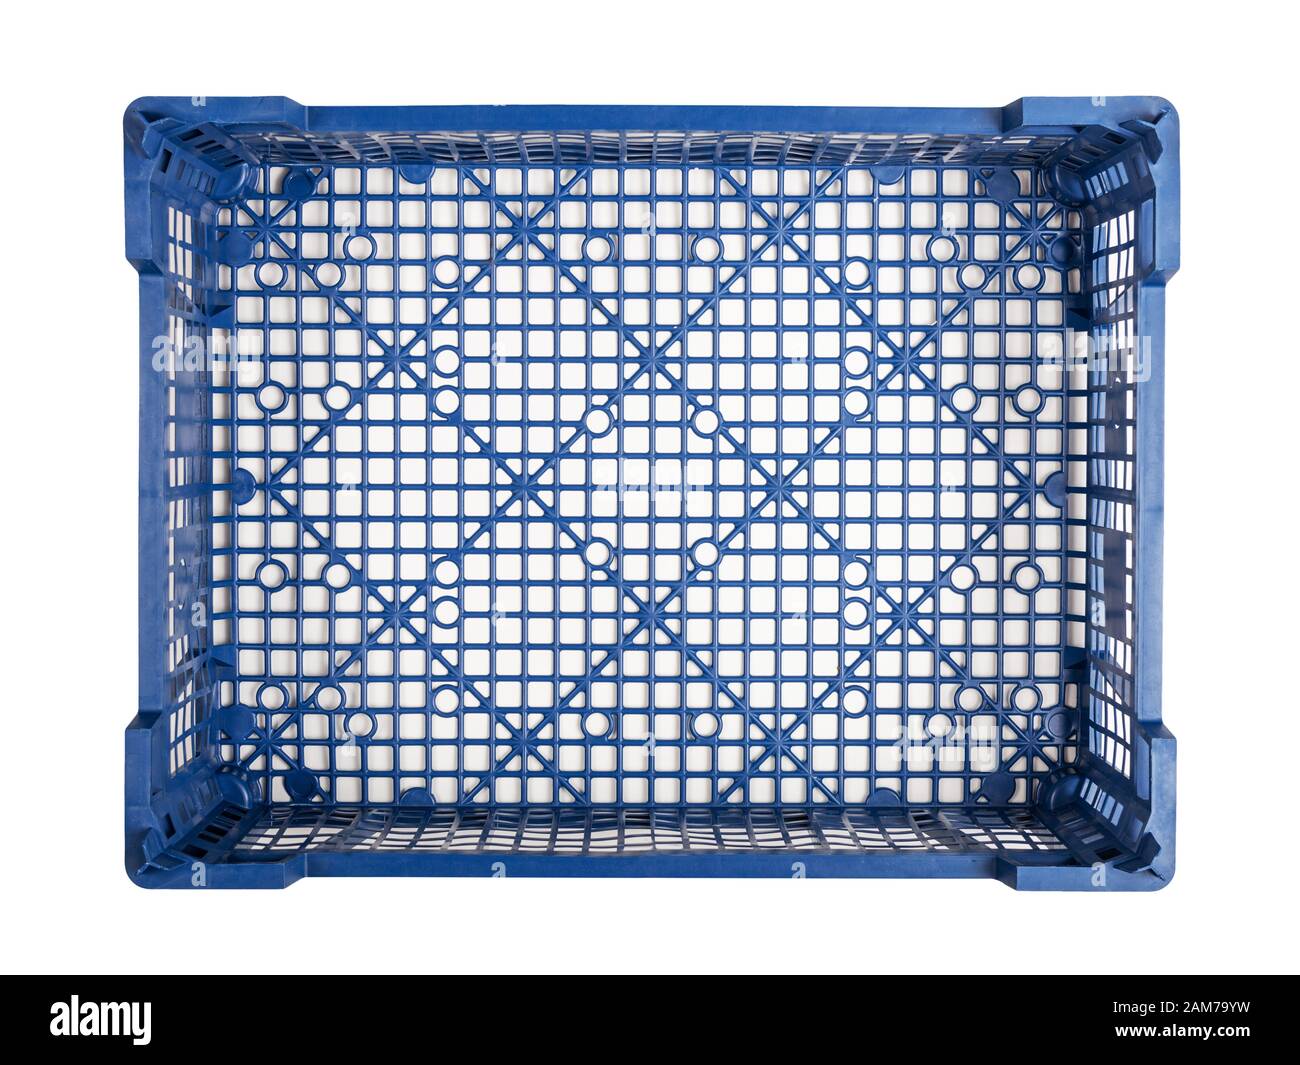 Caisse en plastique bleu vide isolée sur fond blanc Photo Stock - Alamy